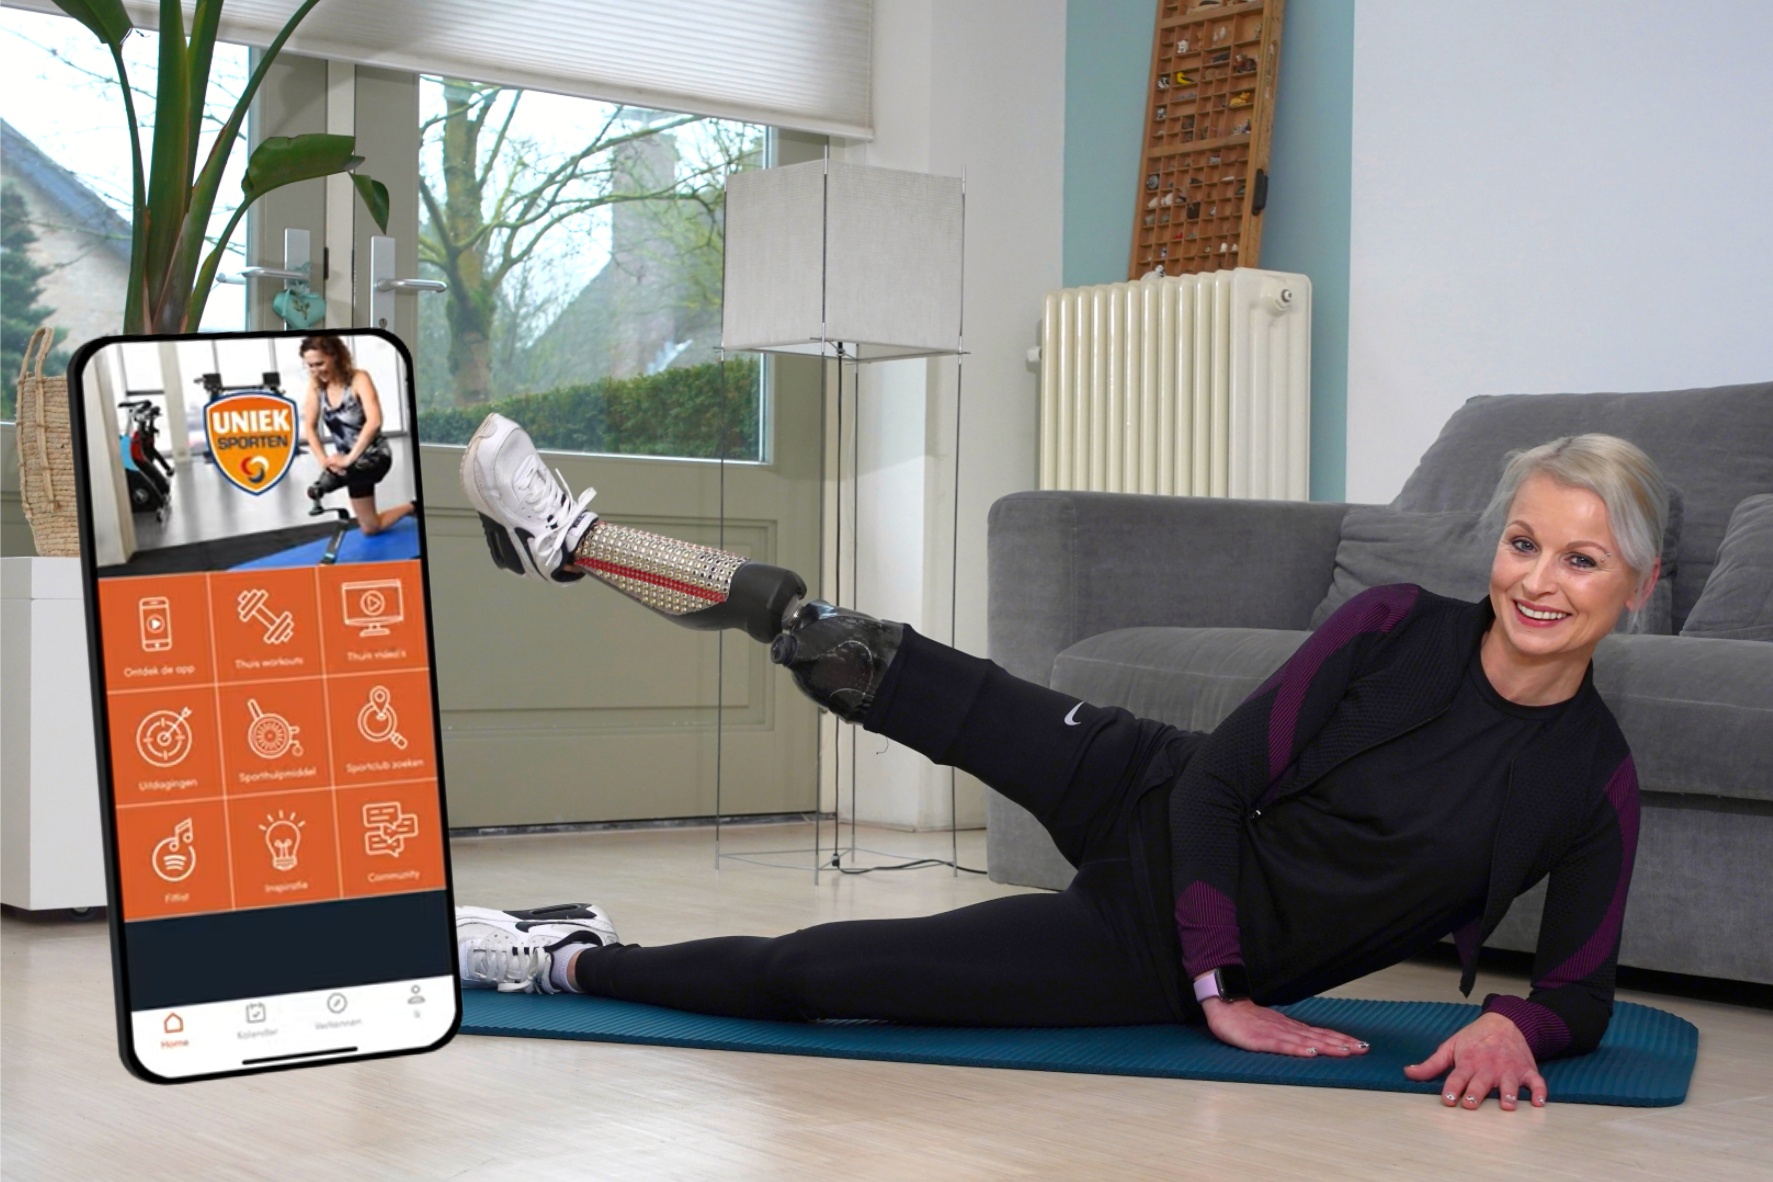 Fonds Gehandicaptensport lanceert fitness app: Uniek Sporten Thuis - Actief